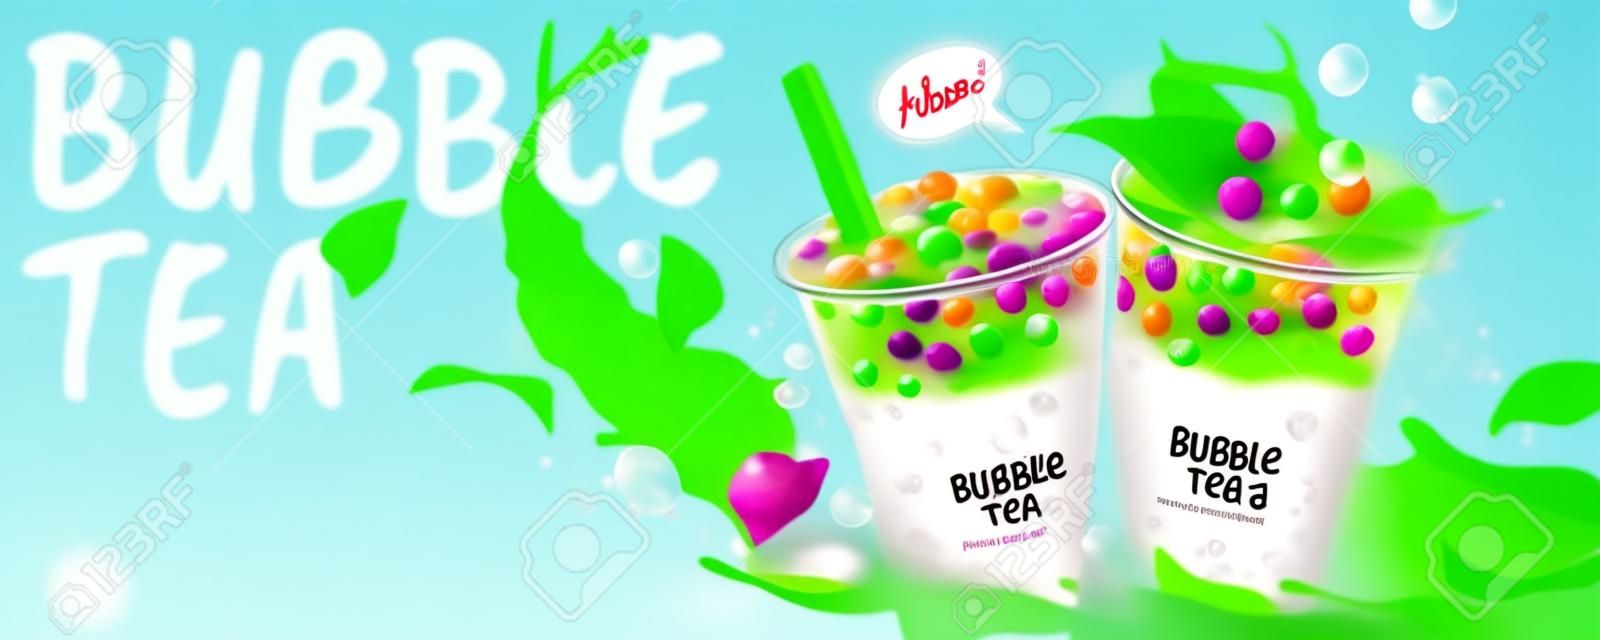 Anuncios de banner de té de burbujas con salpicaduras de leche y hojas verdes, ilustración 3d